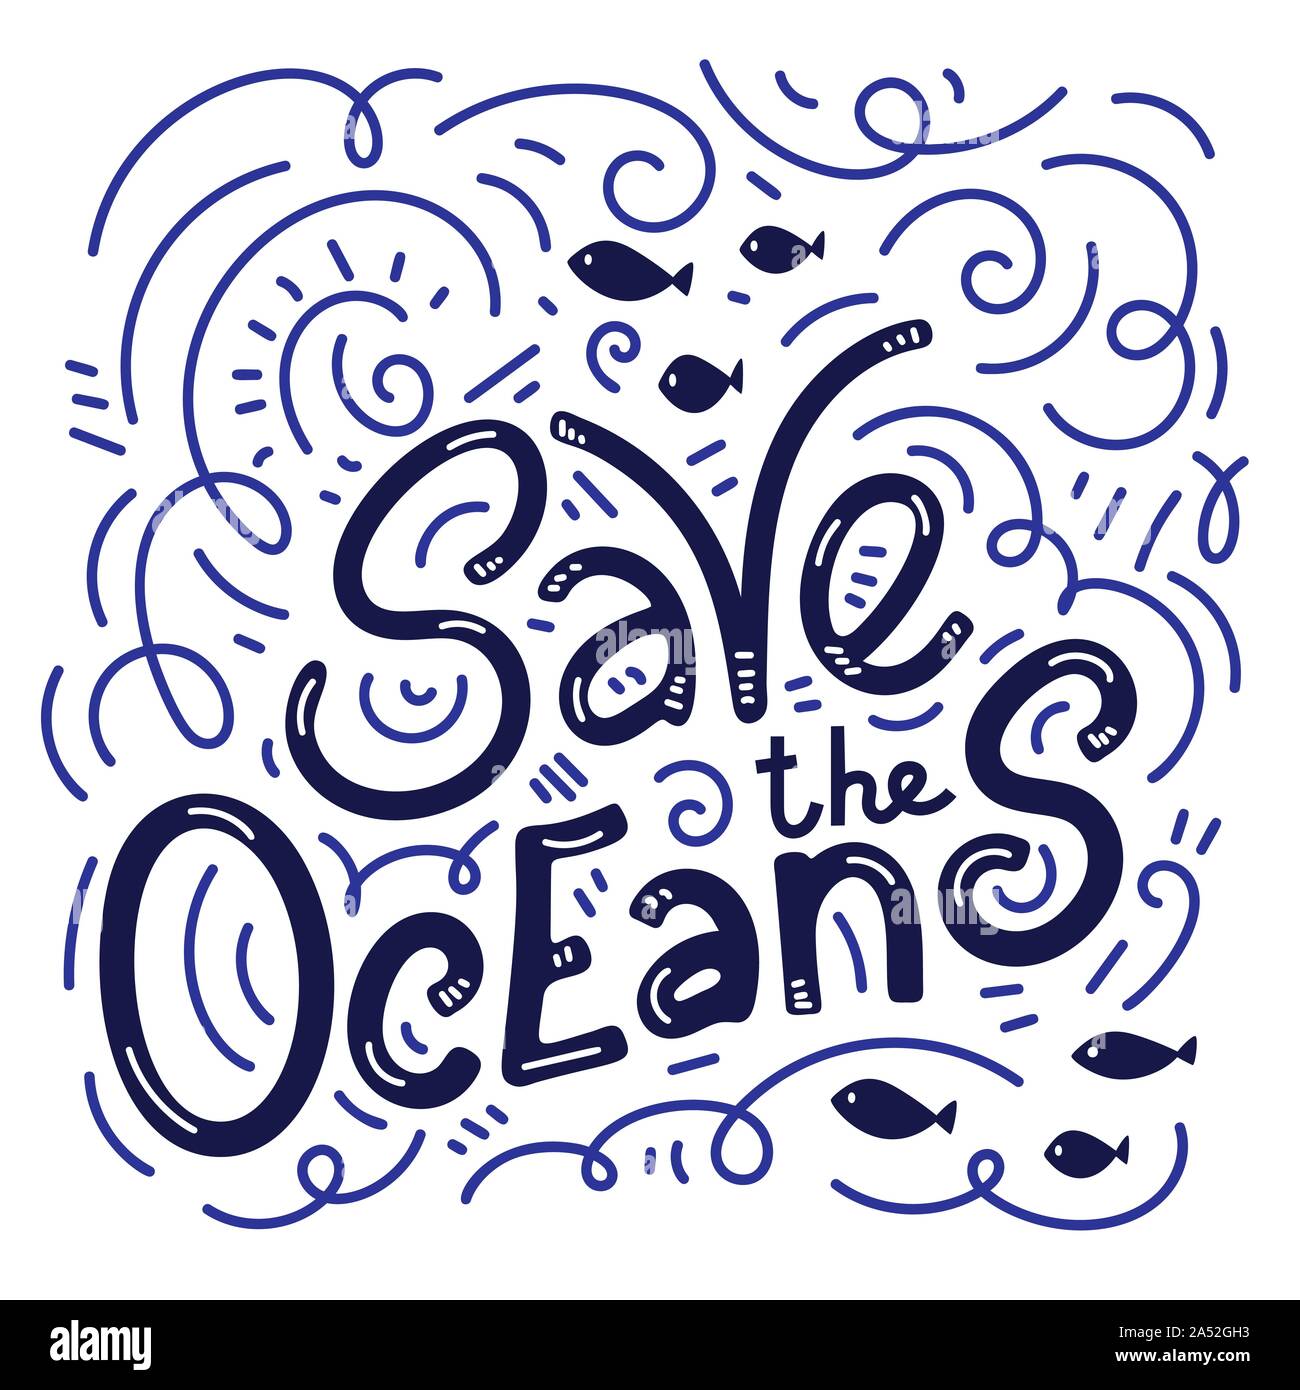 Speichern Sie die ocean Hand gezeichnet Schriftzug. Vector Illustration. Ozean Konzept schützen. Motivierend phrase Zitat Stock Vektor